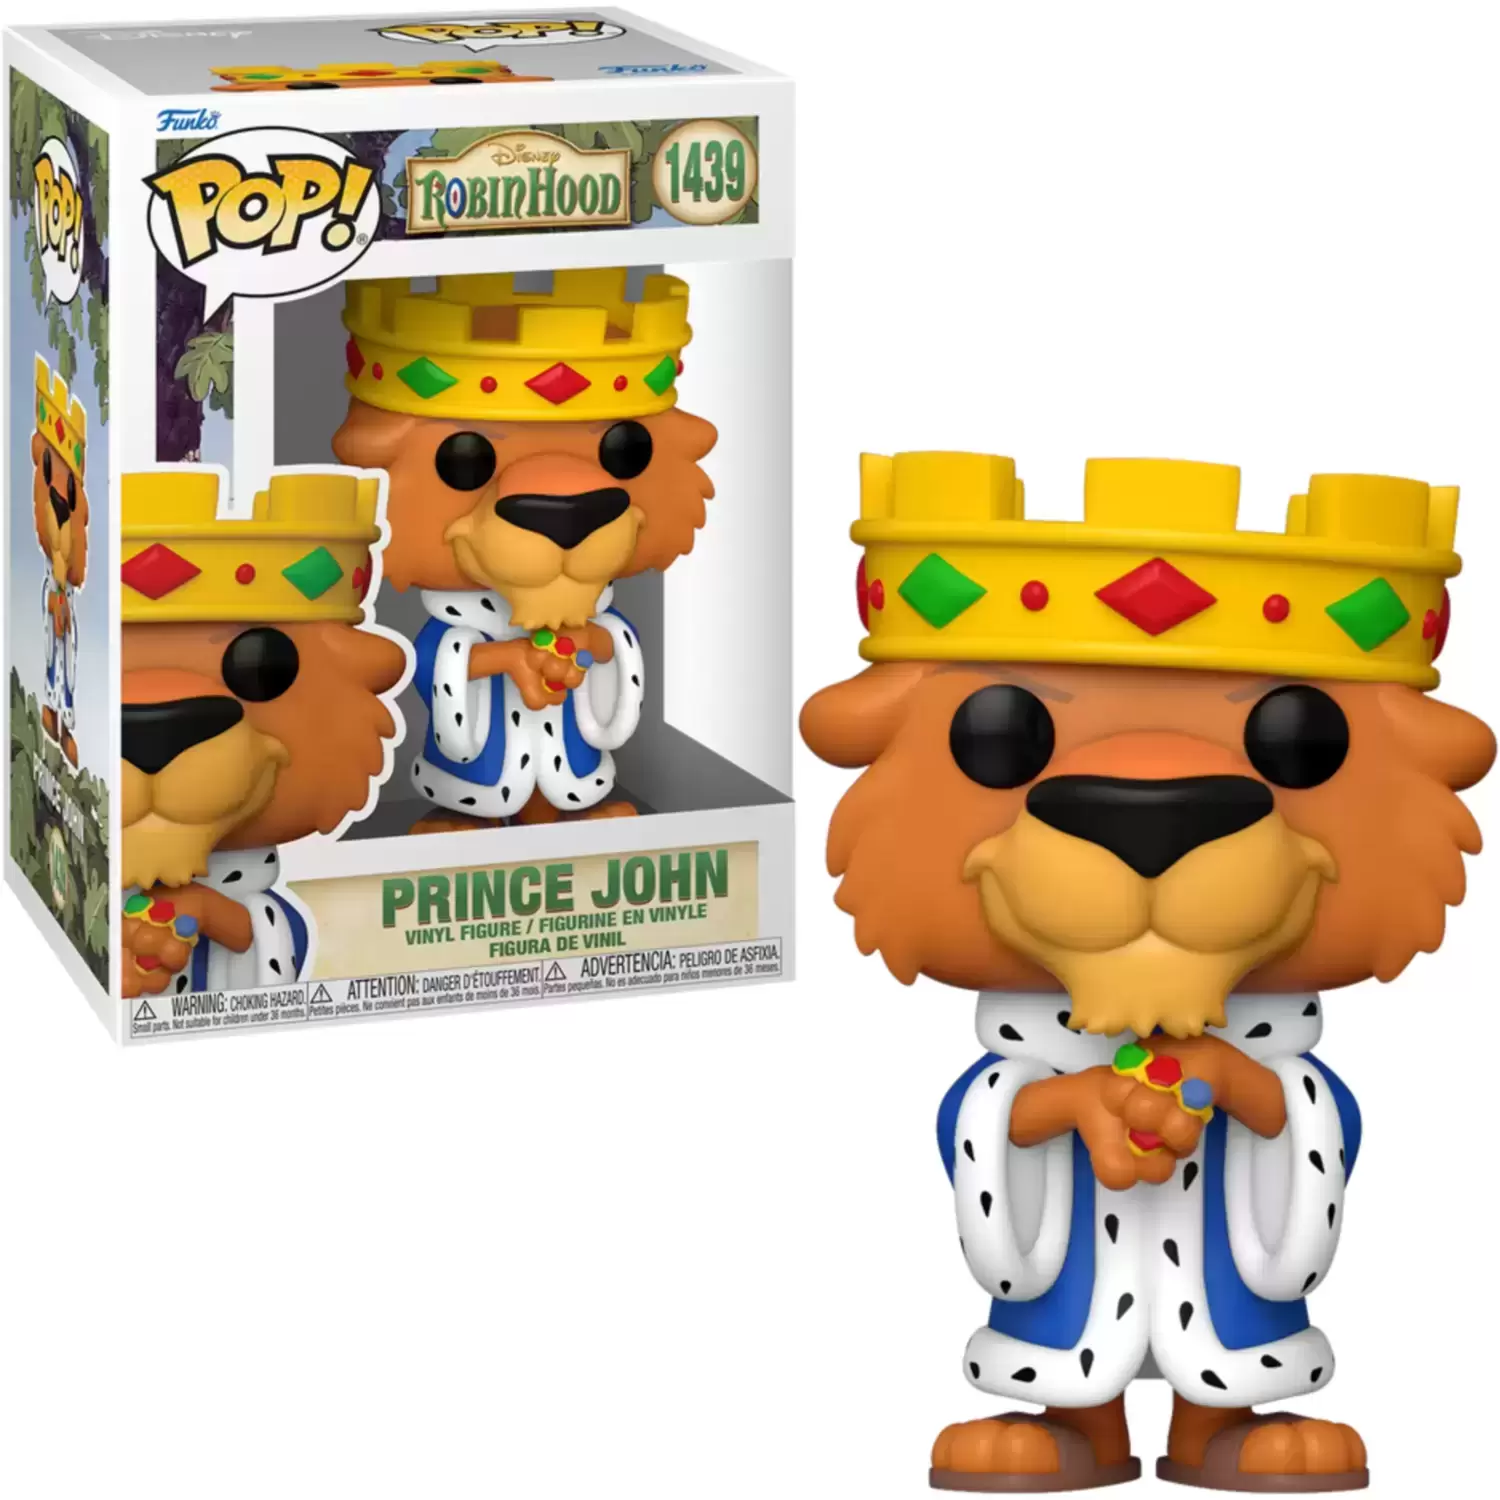 POP! Disney - Robin Hood - Prince John